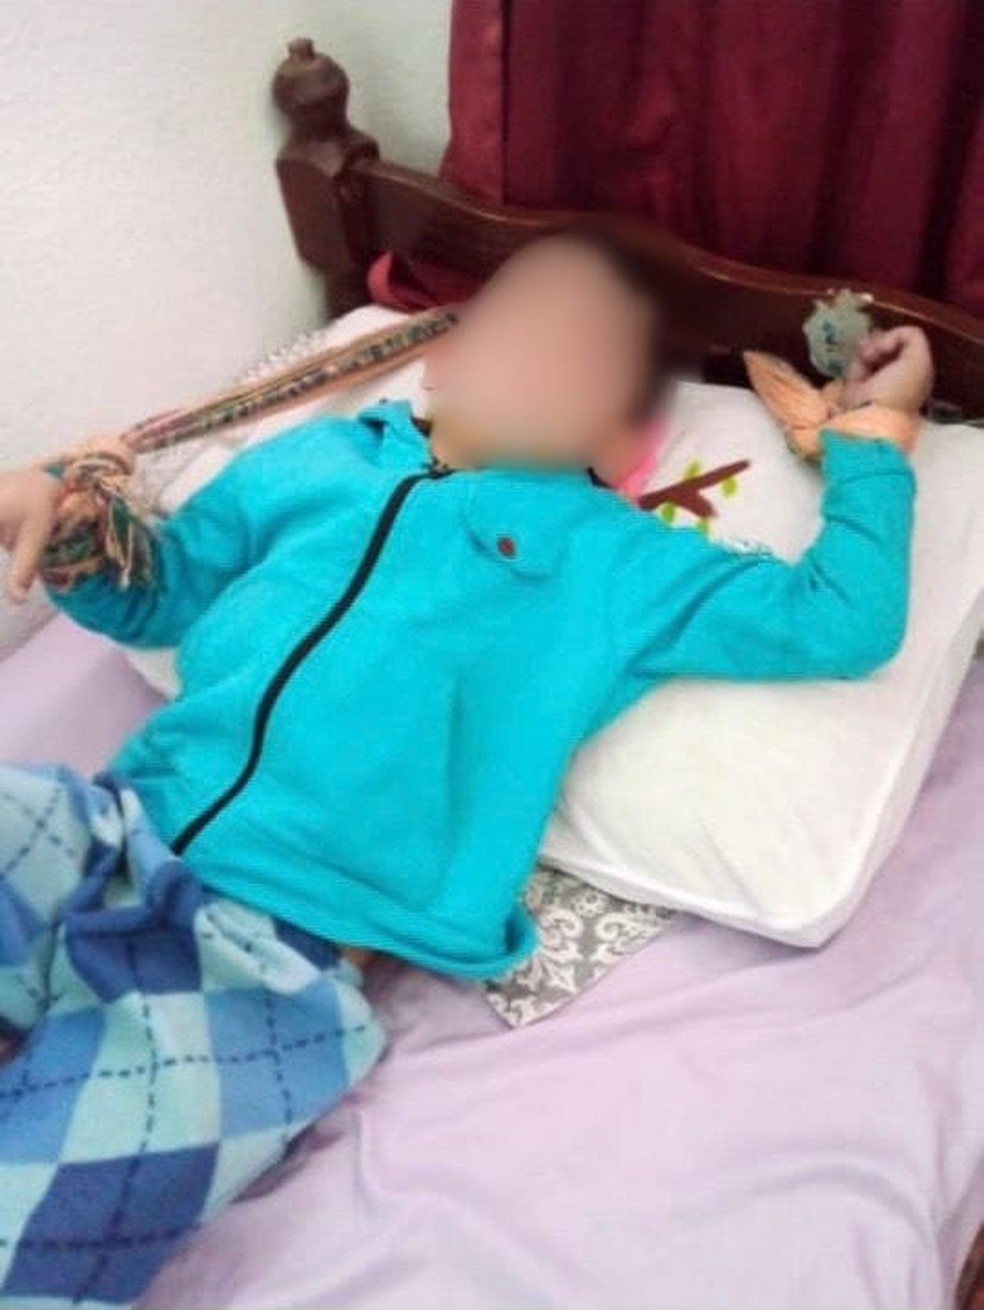 Menino era amarrado a cama em Canoas  — Foto: Reprodução